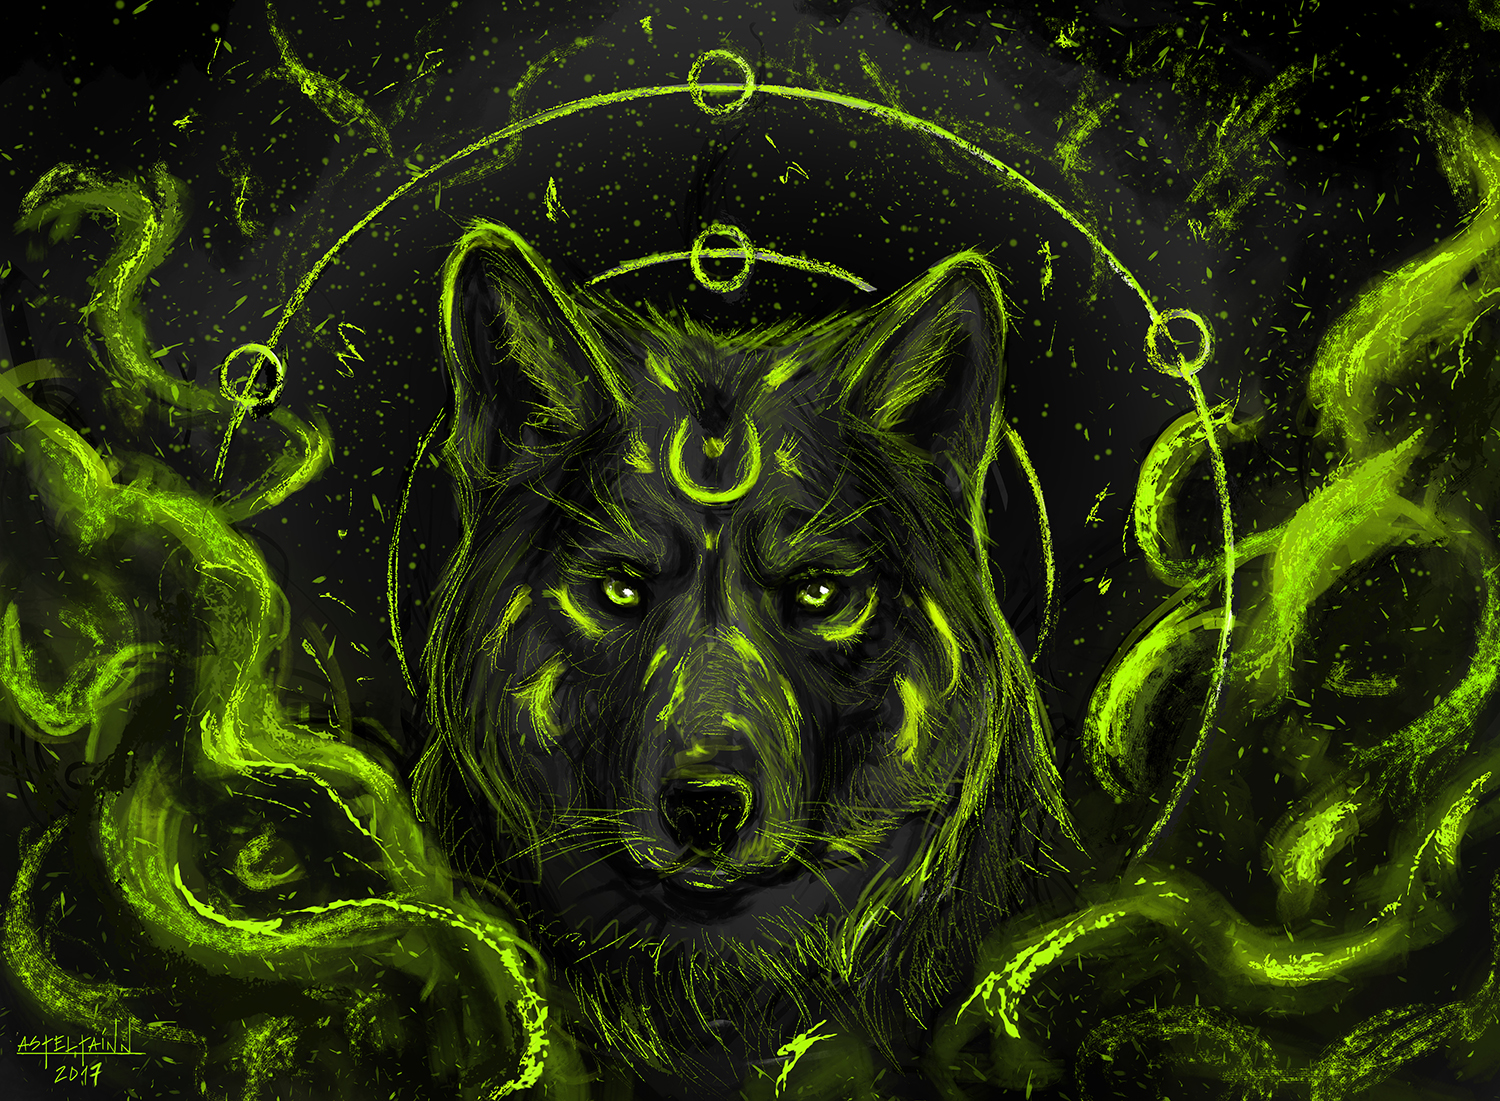 Fantasy Wolf Art by Asteltainn